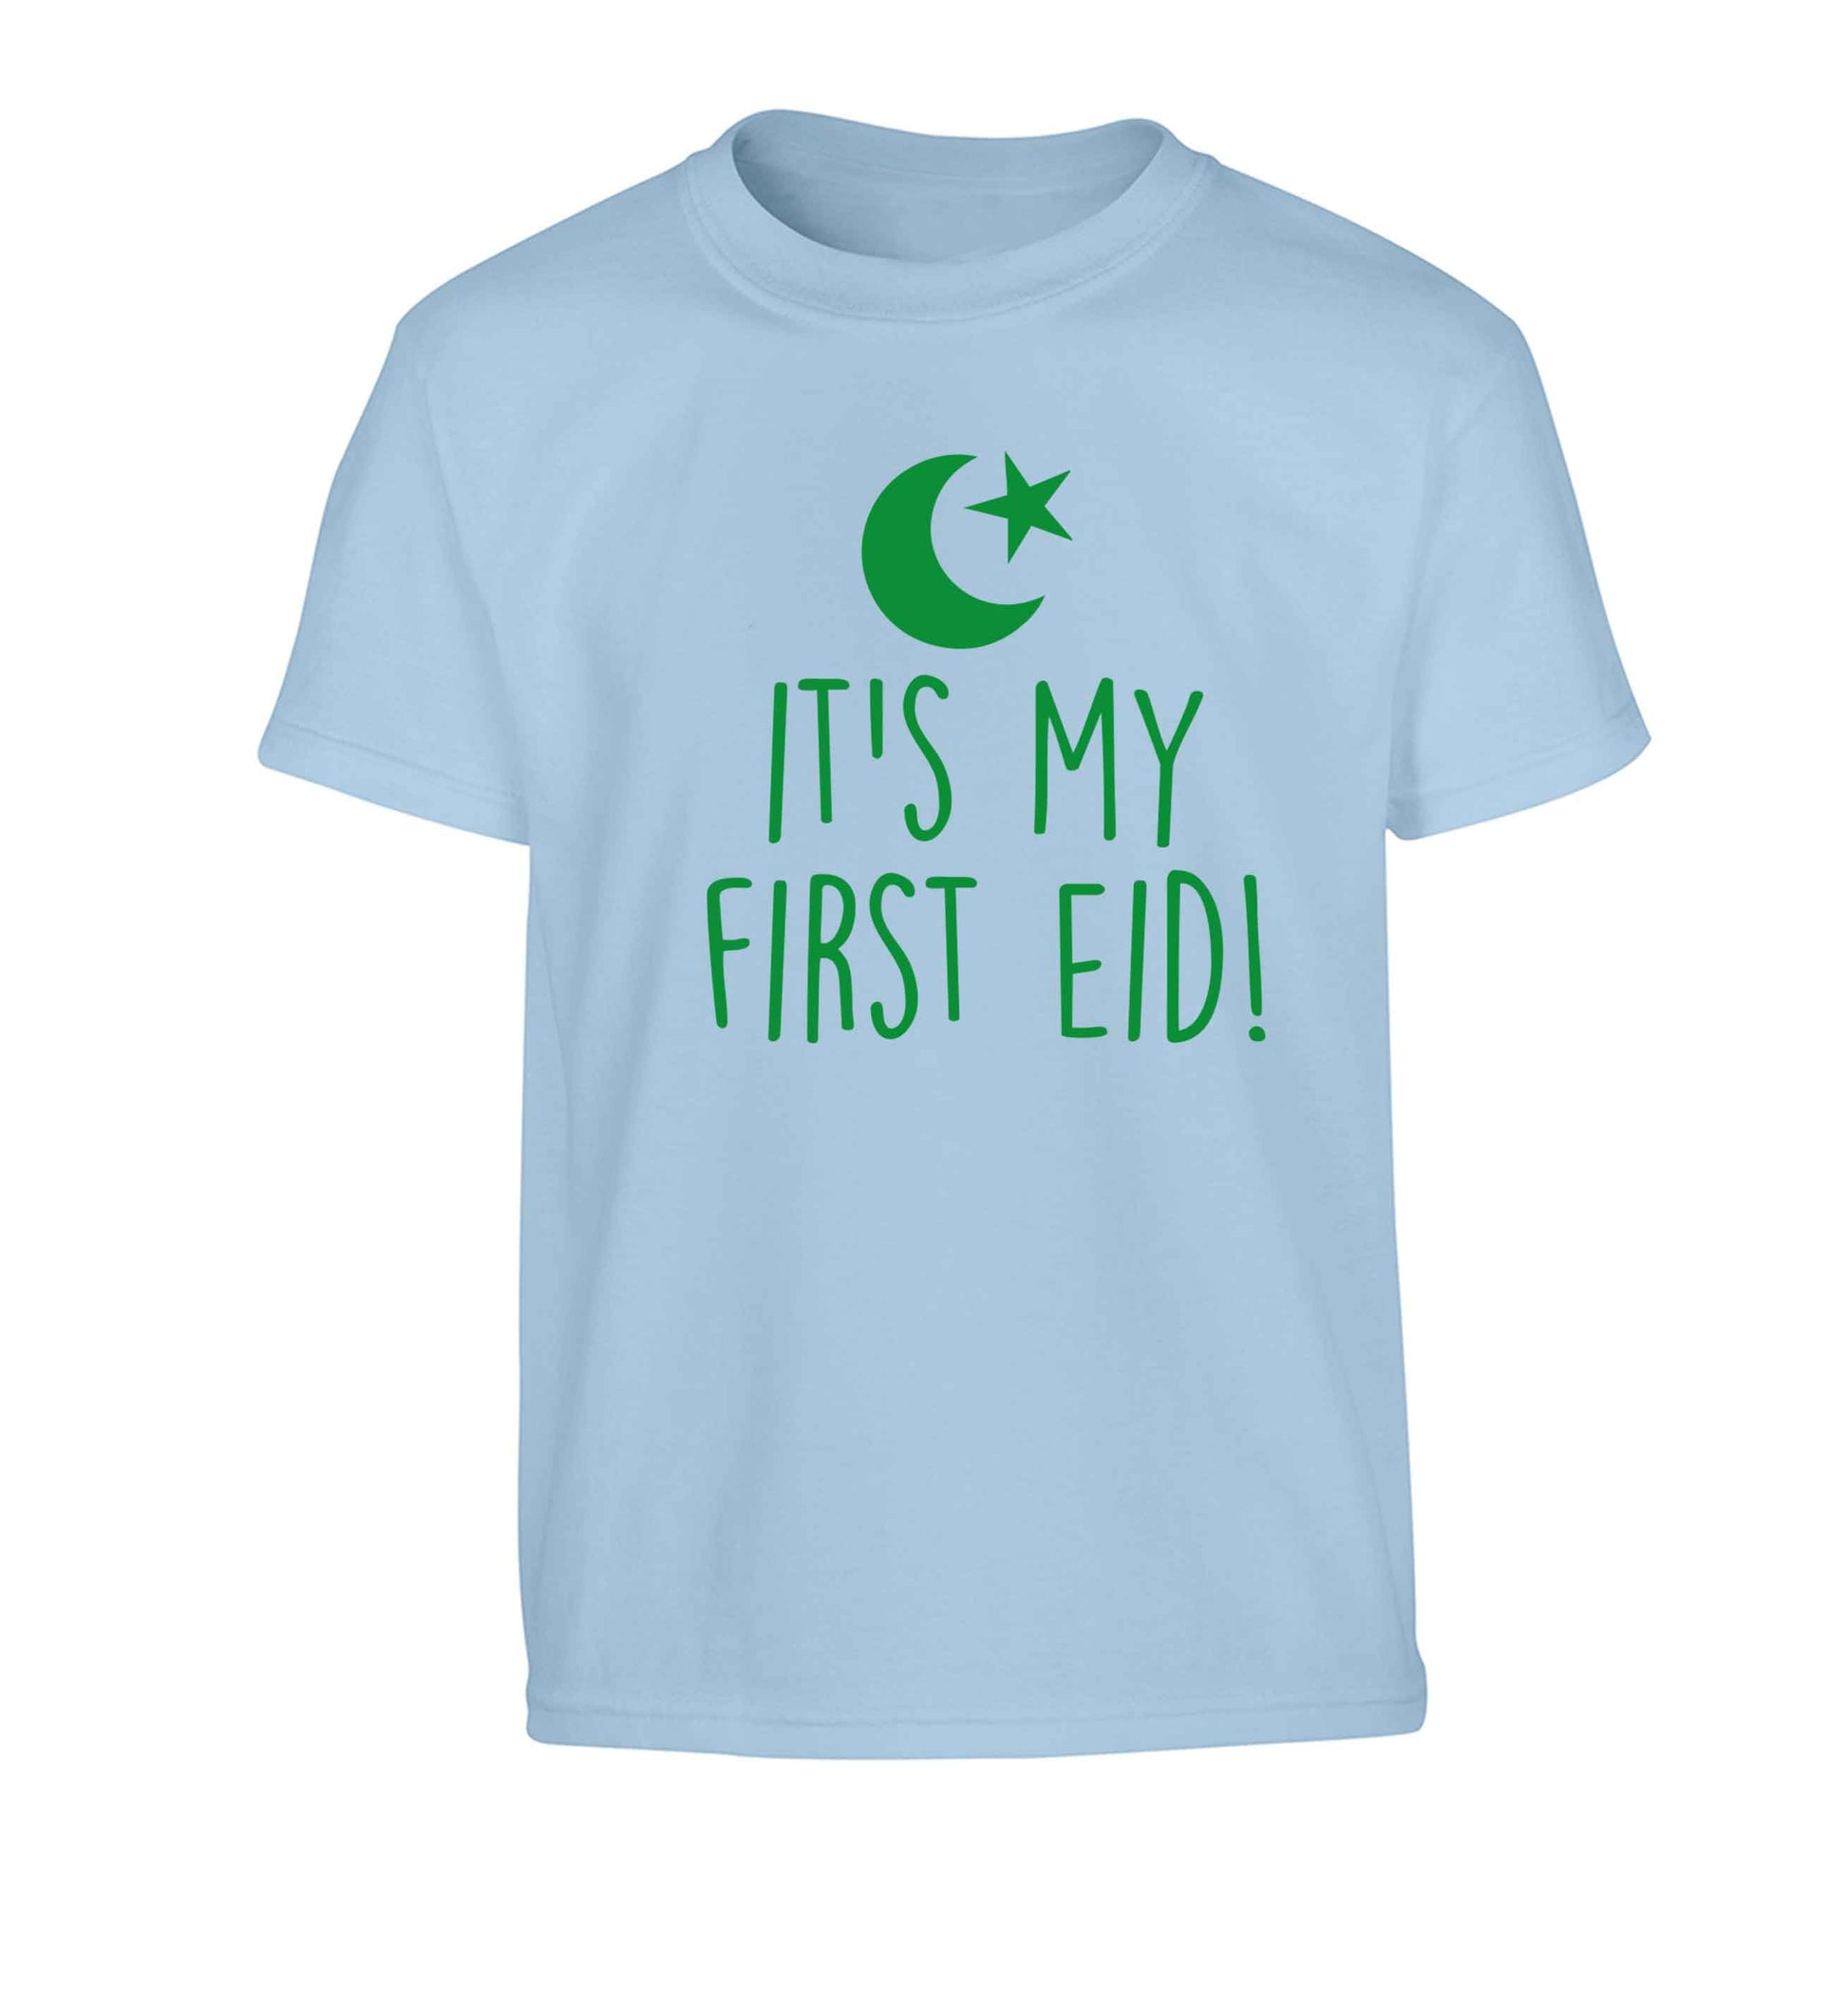 It's my first Eid Children's light blue Tshirt 12-13 Years